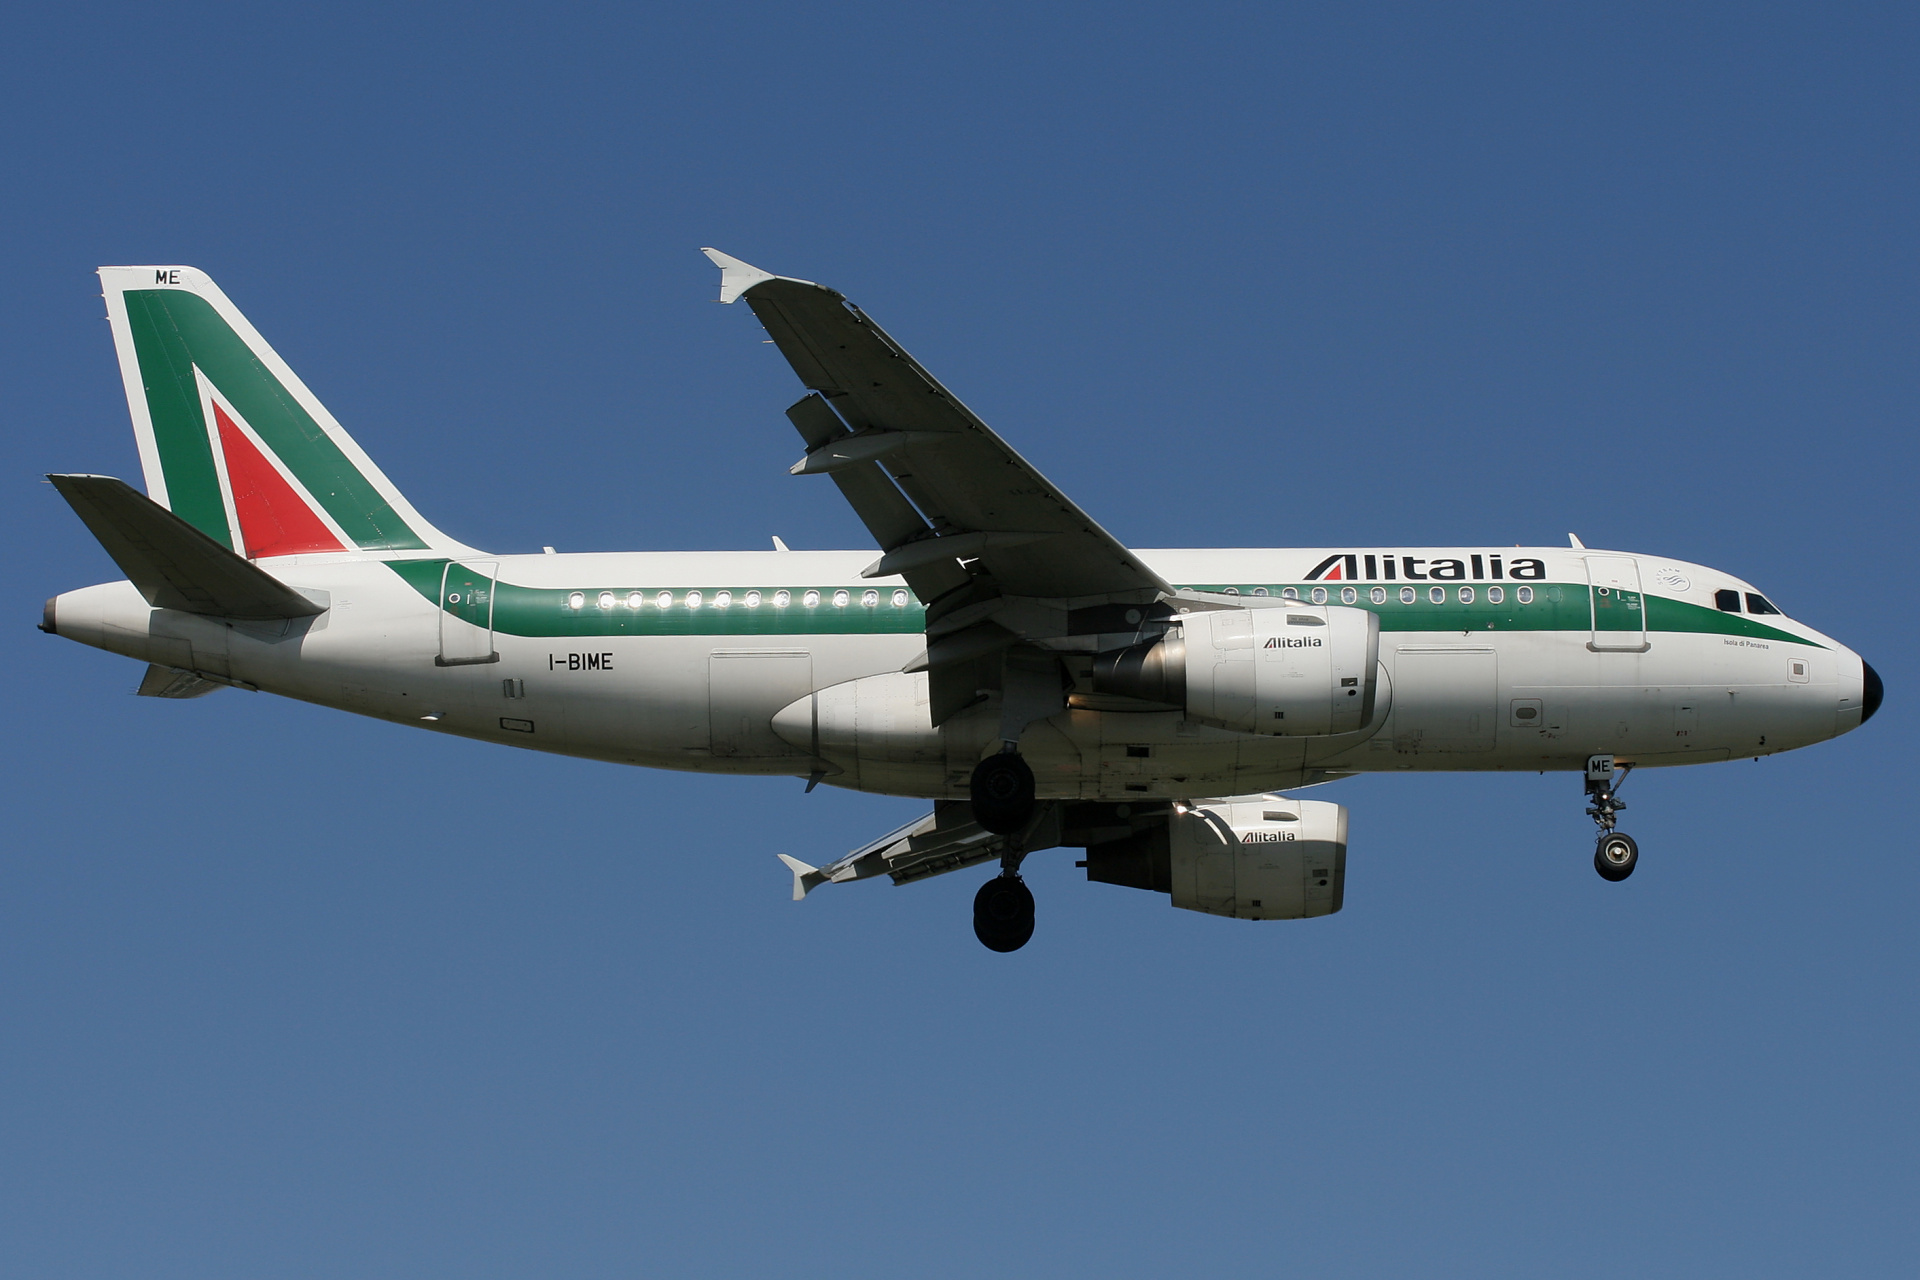 I-BIME (Aircraft » EPWA Spotting » Airbus A319-100 » Alitalia)